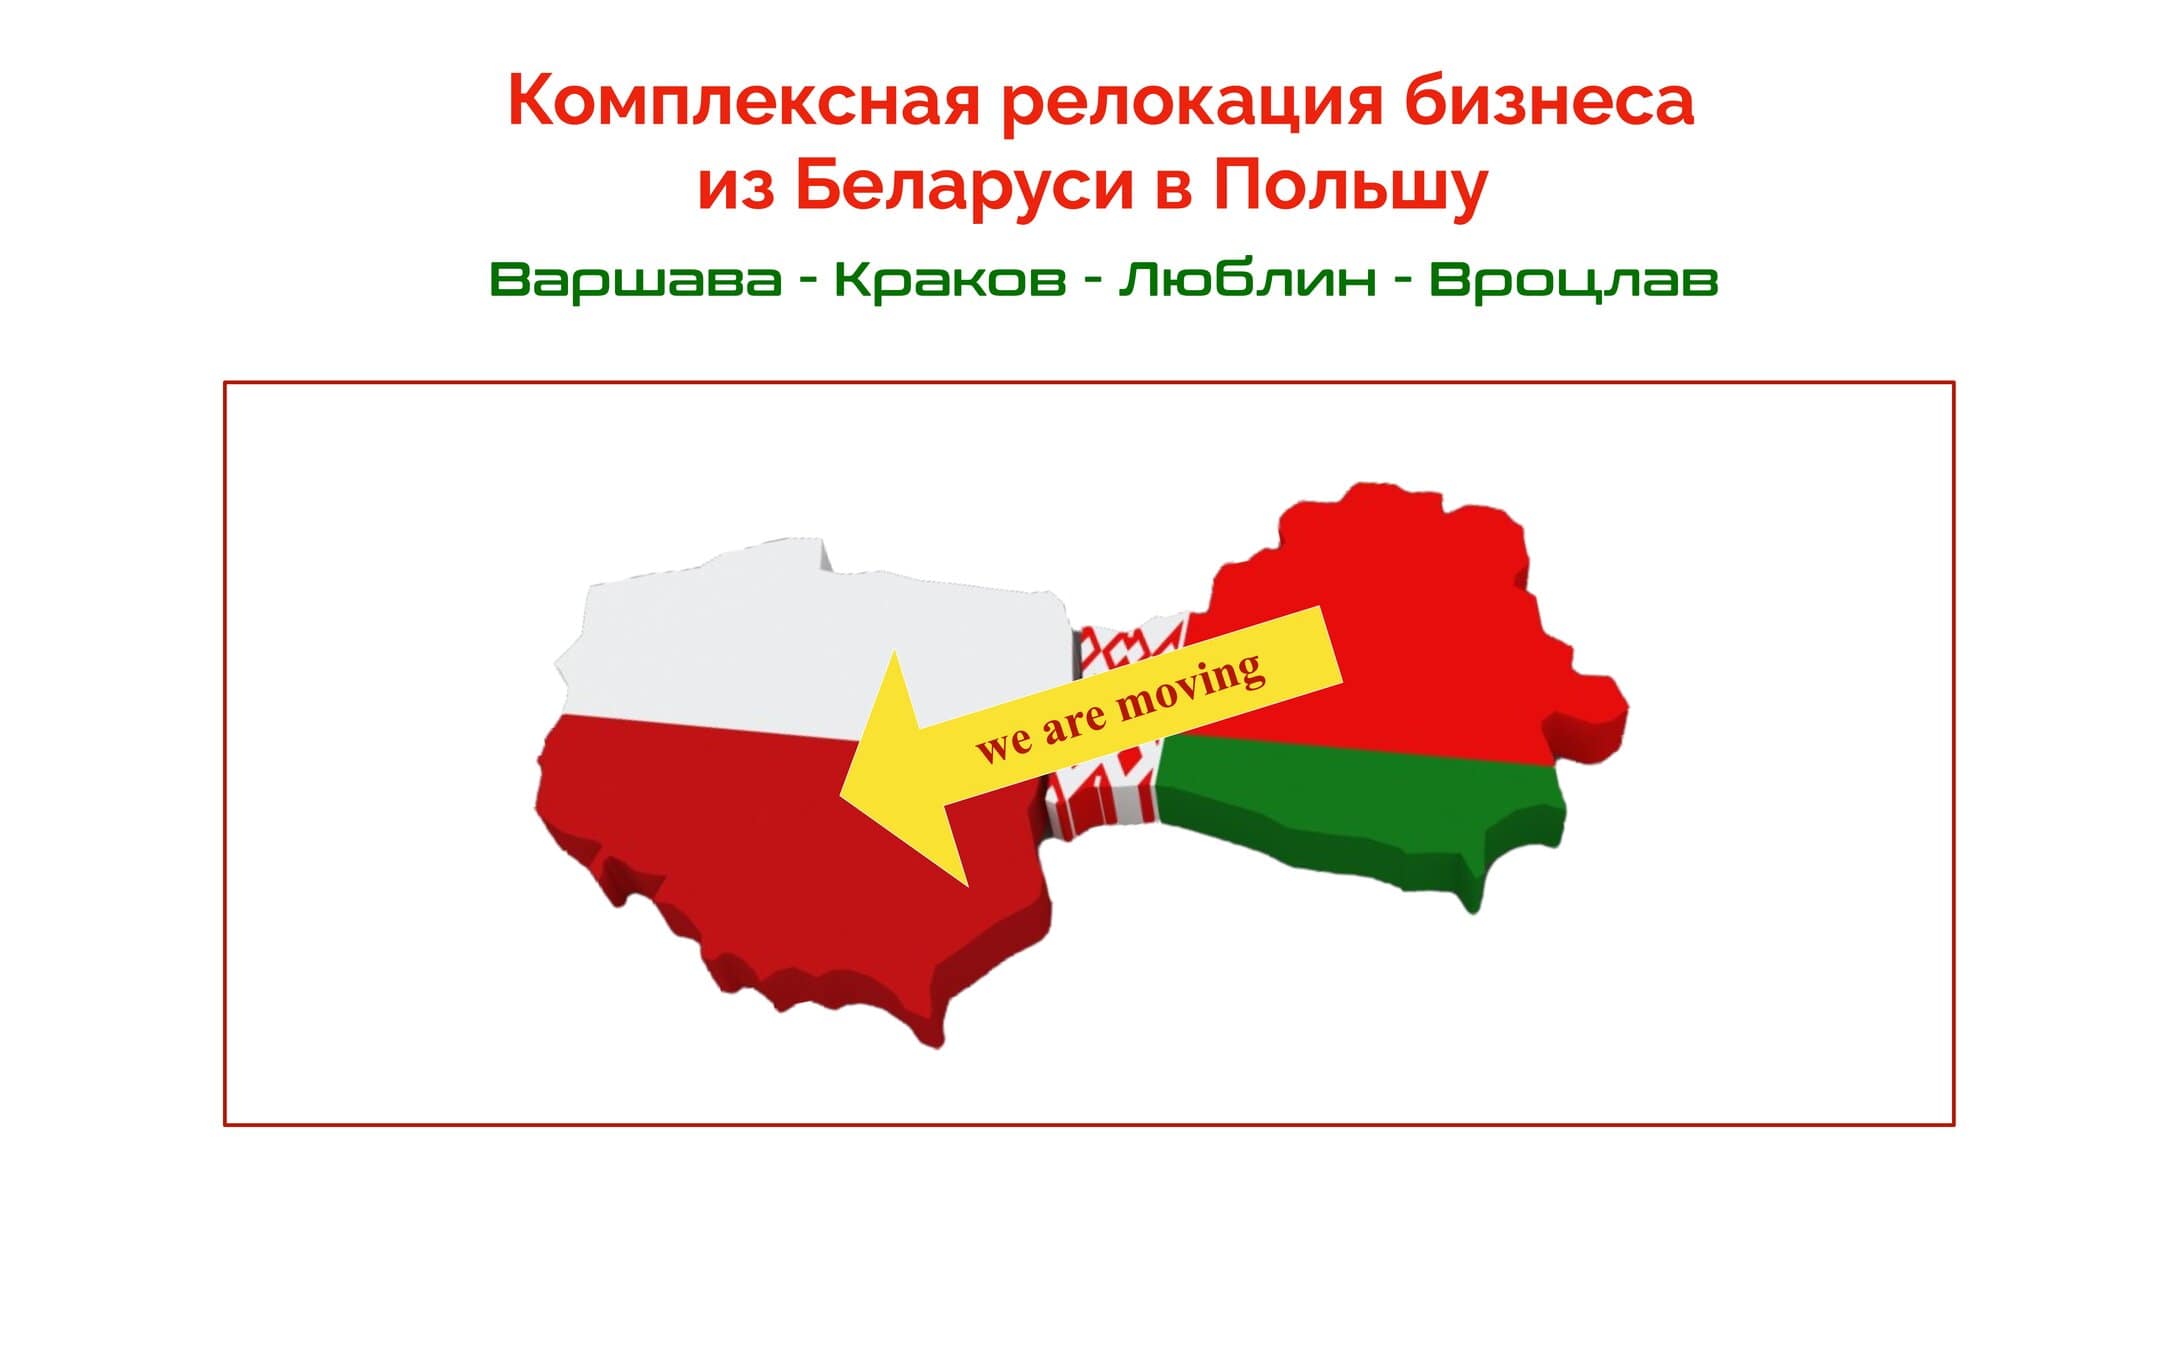 Услуга комплексной релокации компаний из Беларуси в Польшу